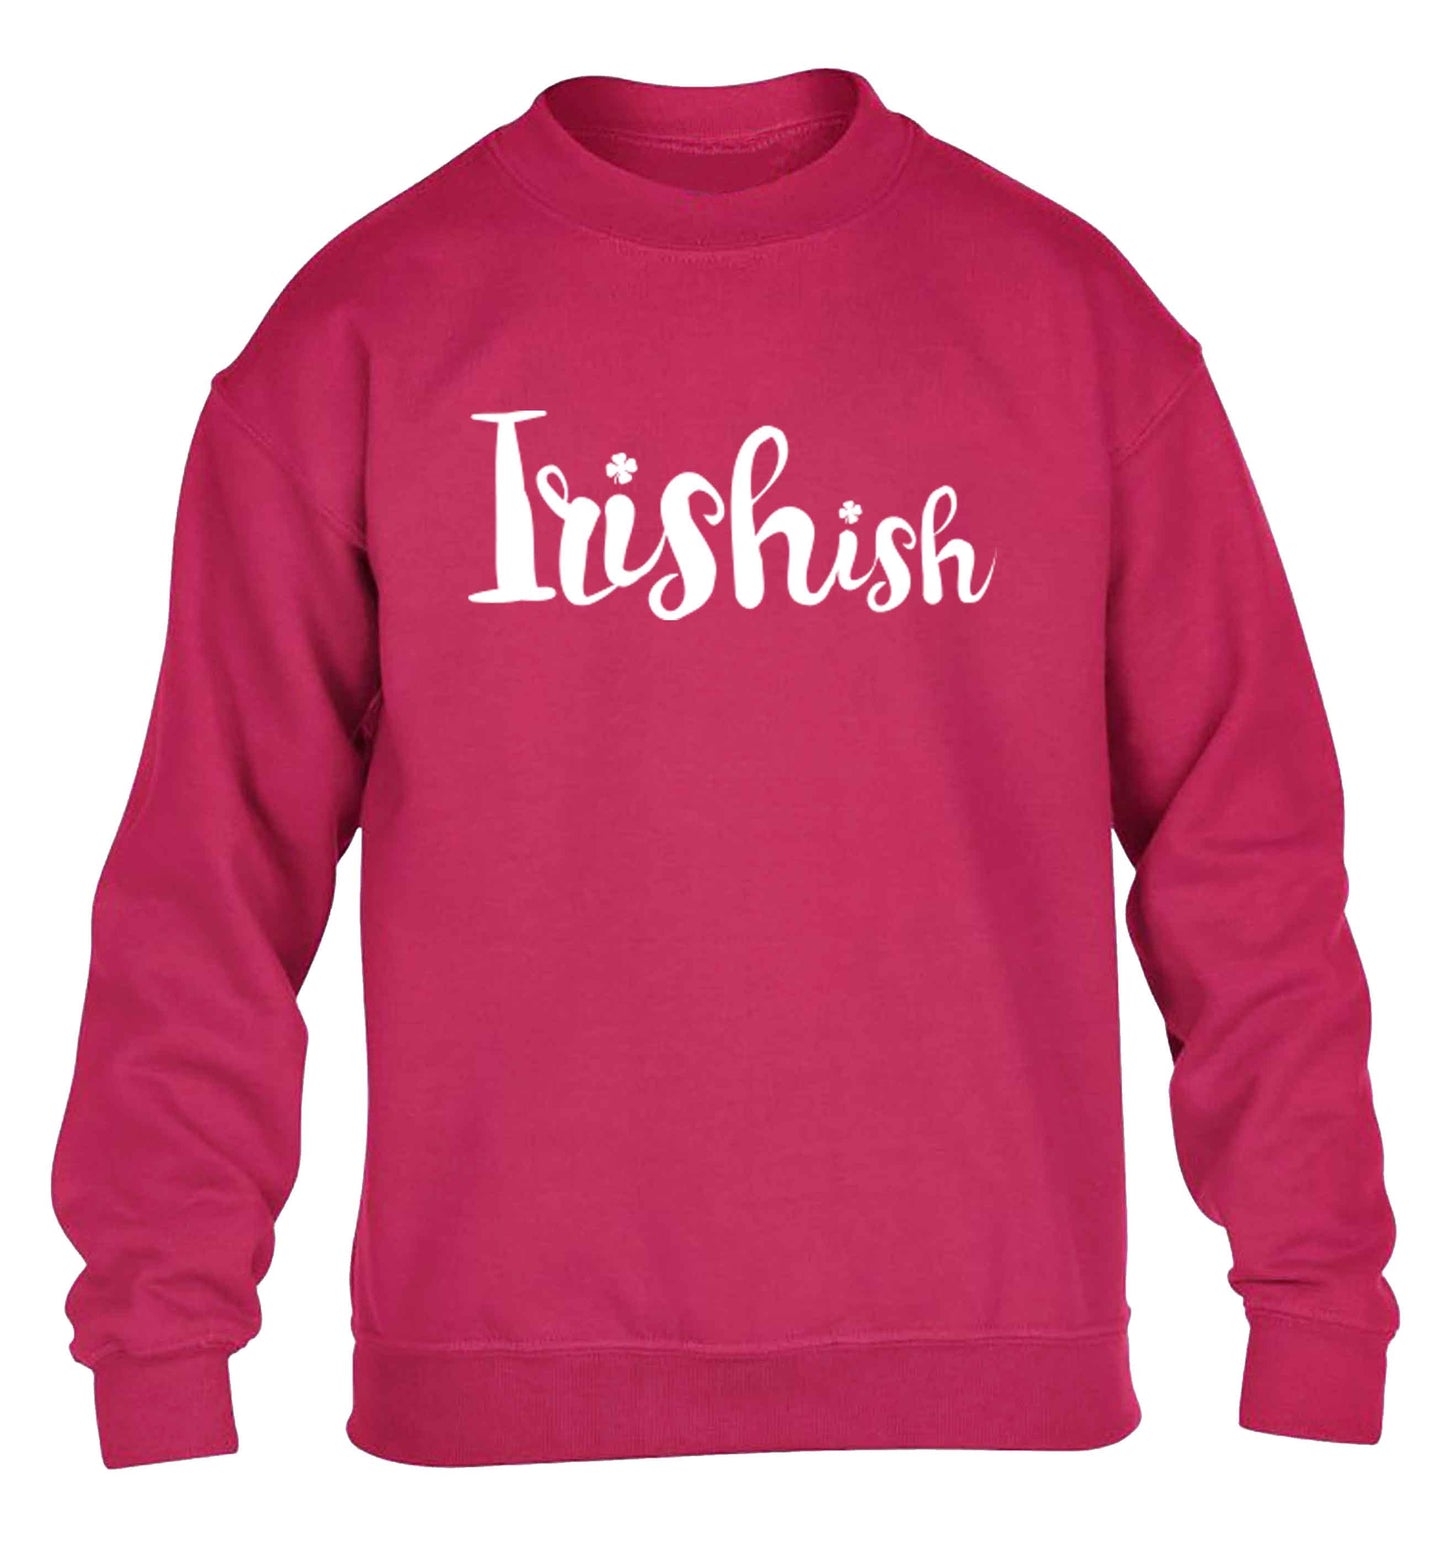 Irishish children's pink sweater 12-13 Years